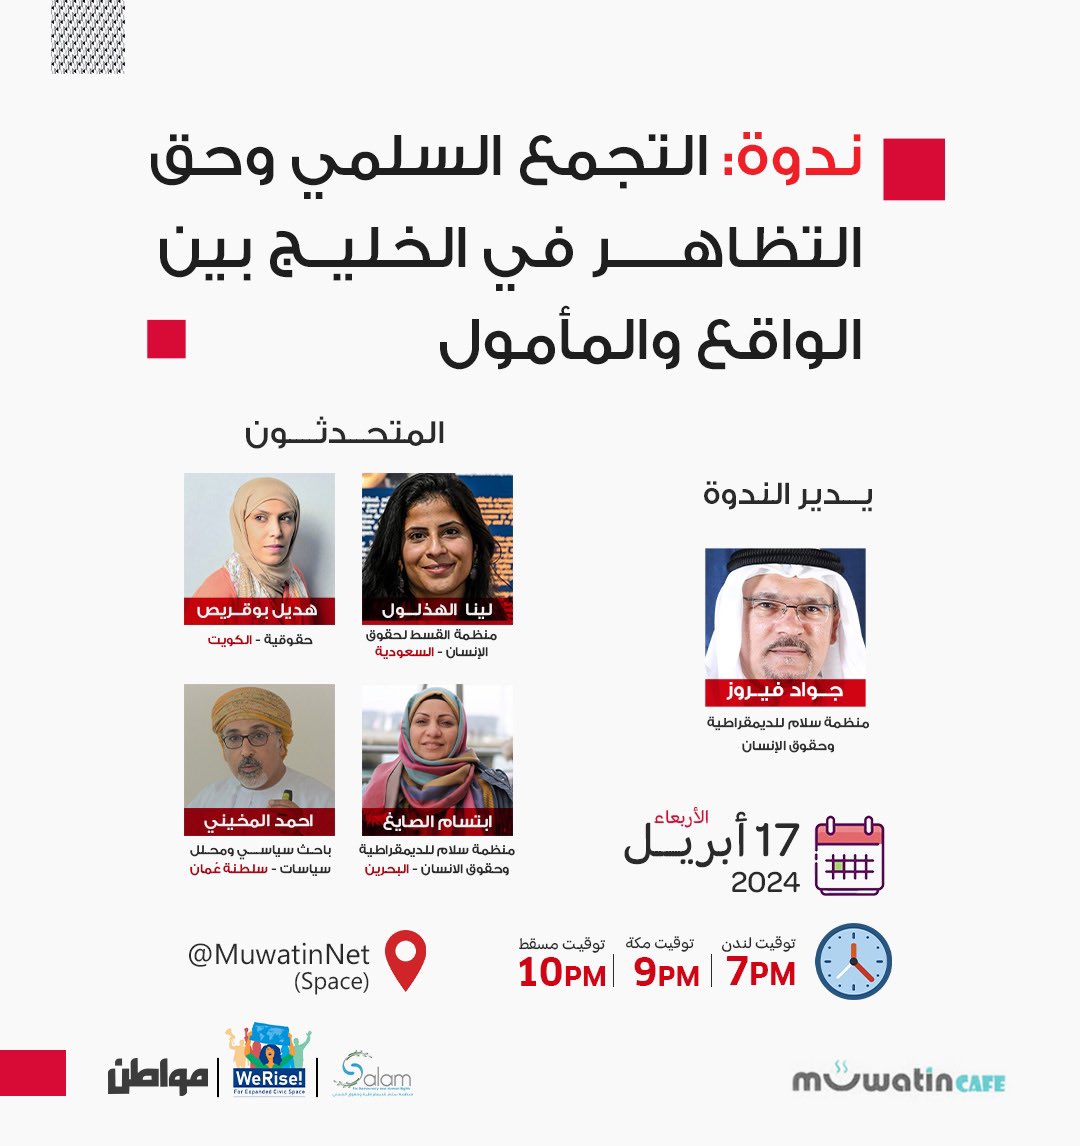 ستشارك لينا الهذلول في ندوة بعنوان: 'التجمع السلمي وحق التظاهر في الخليج بين الواقع والمأمول' 🗓️ اليوم الأربعاء 17 أبريل 📷 9 مساء بتوقيت البحرين